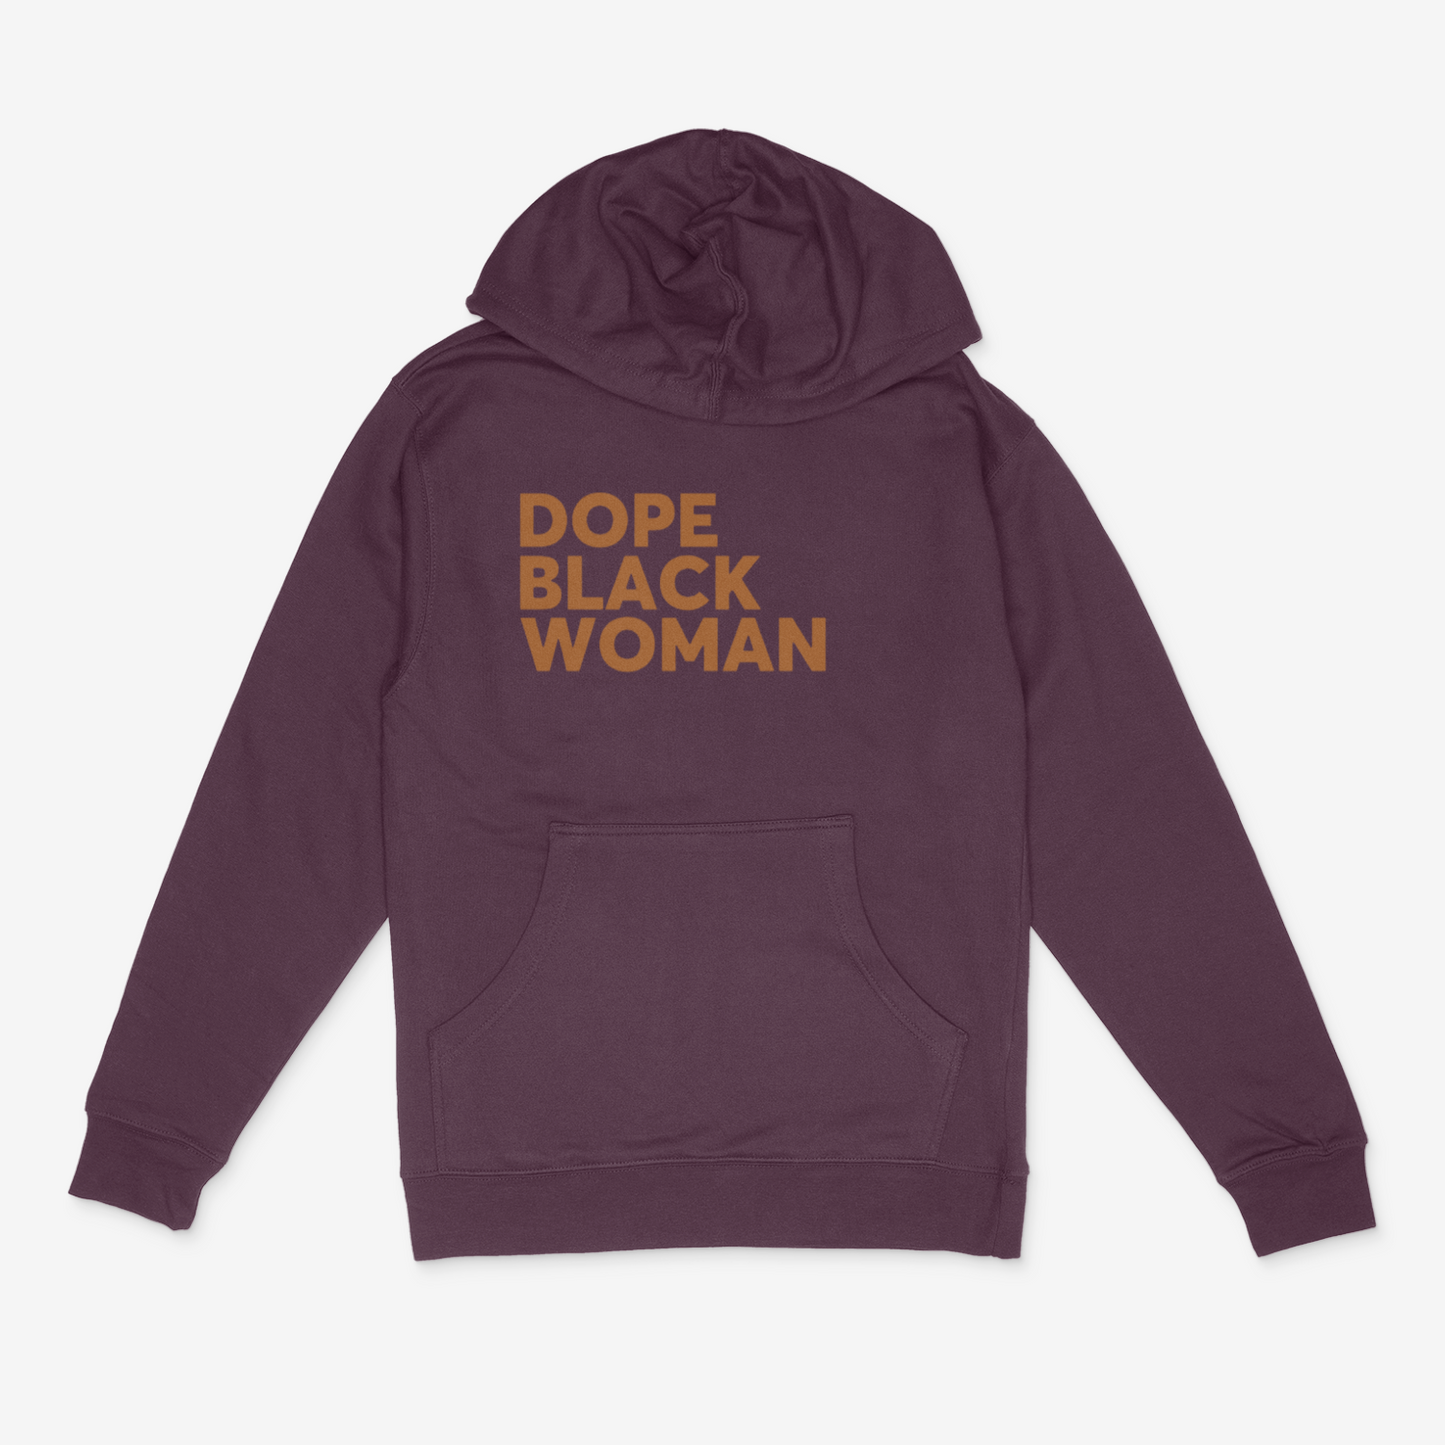 Dope Black Woman Hoodie ( Light Brown)